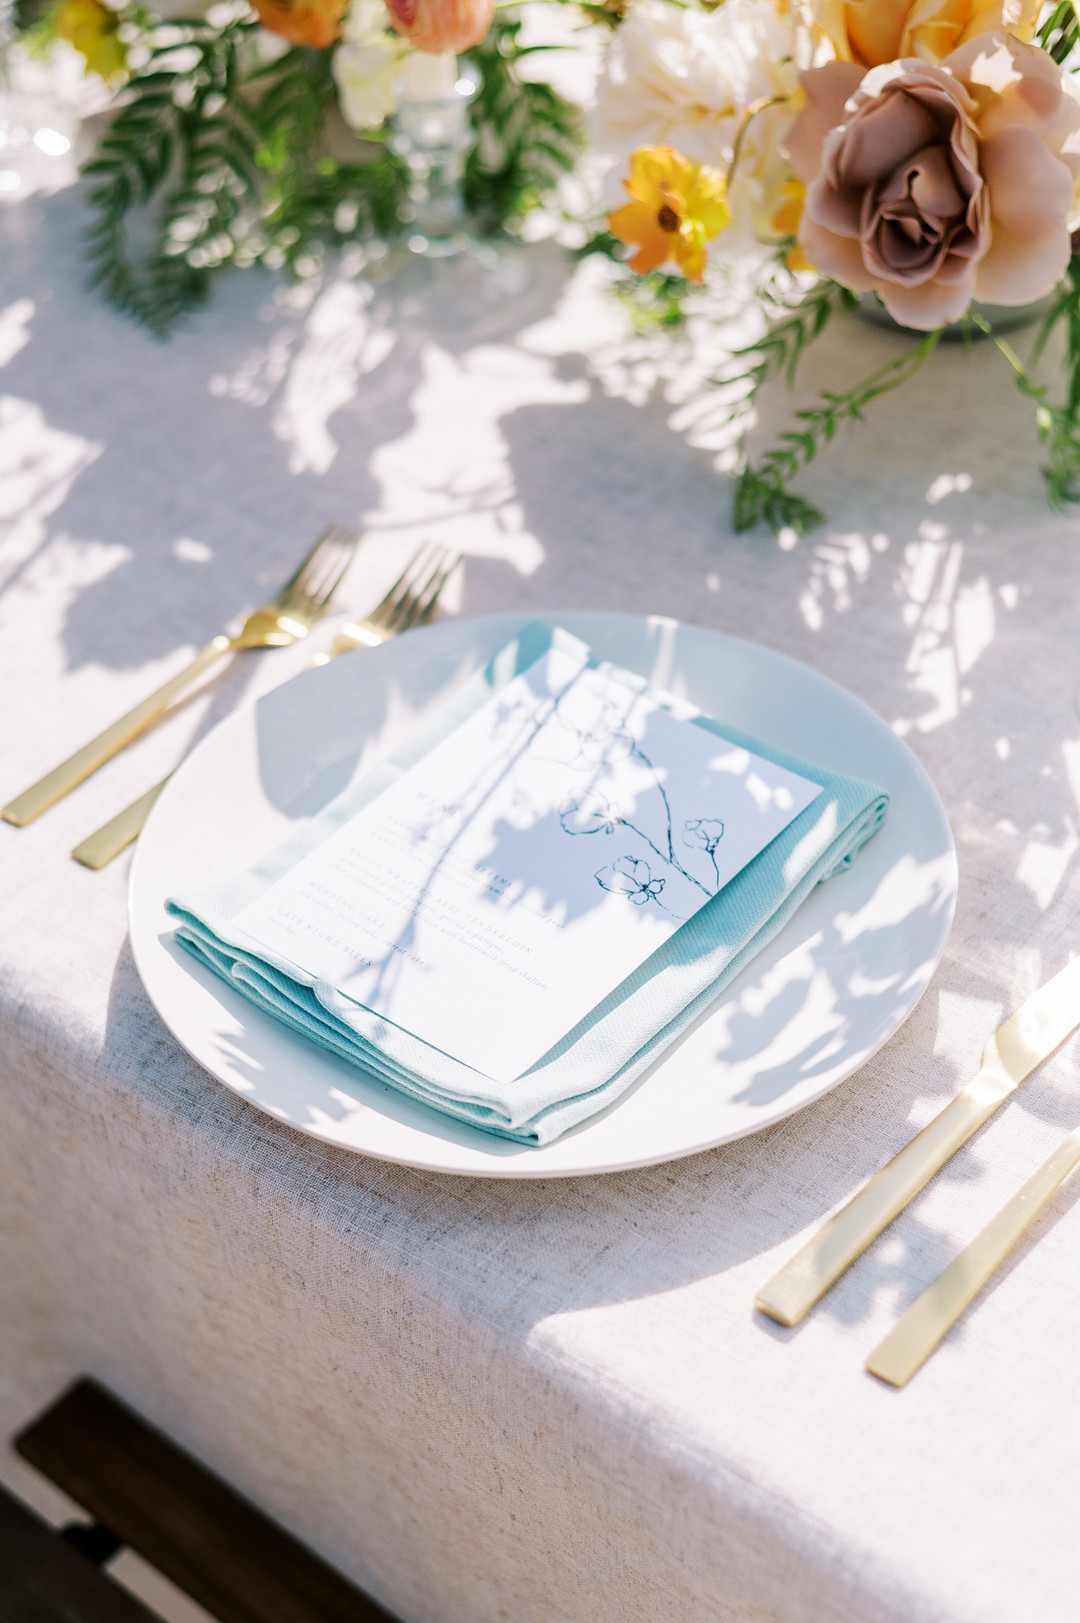 Kräftige Farben in der Tischdeko passen wundervoll zu Papeterie in Blau.